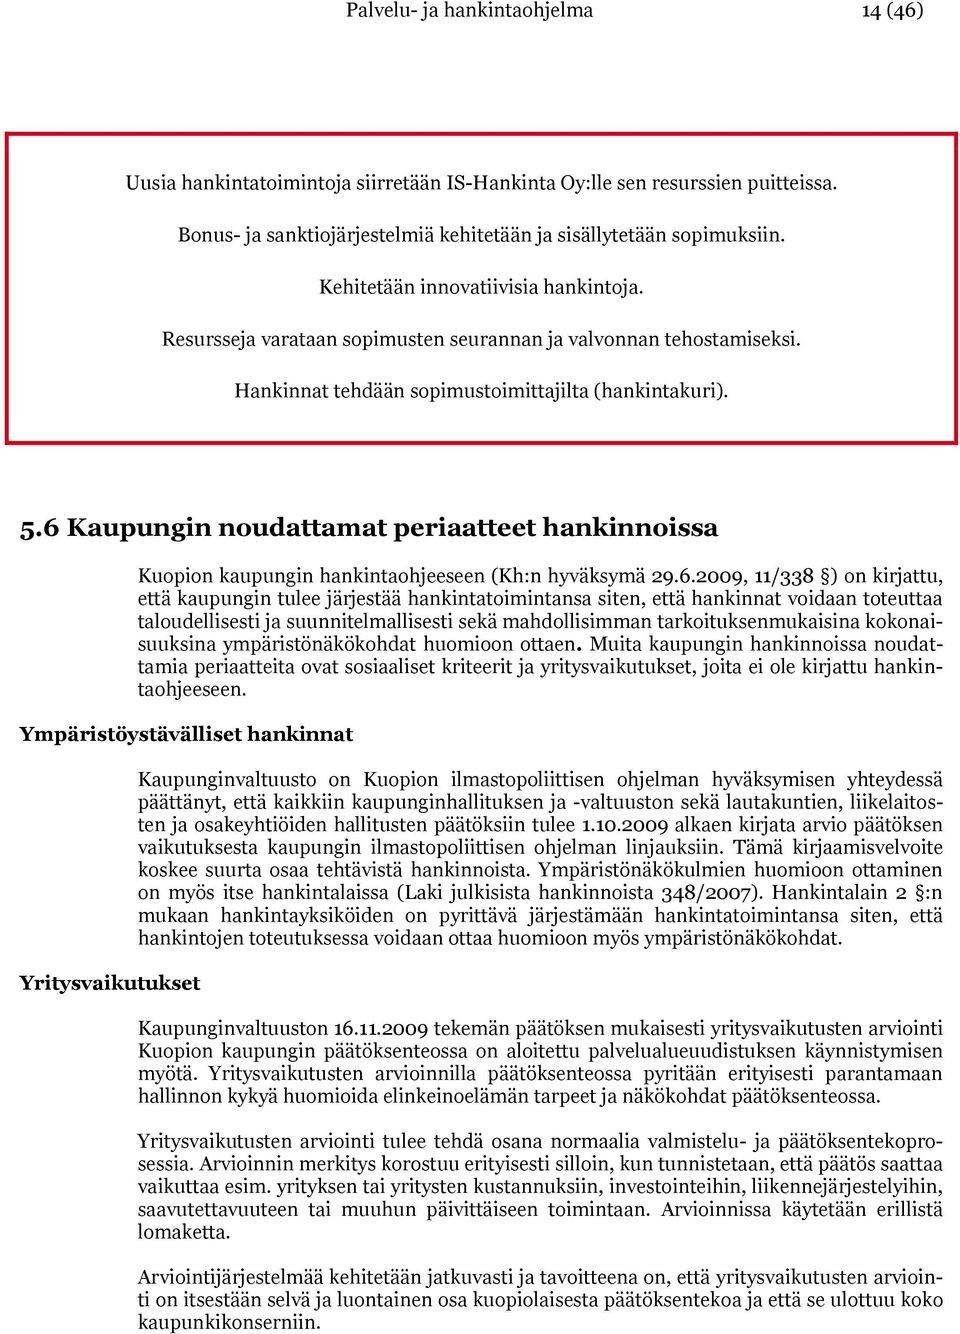 6 Kaupungin noudattamat periaatteet hankinnoissa Kuopion kaupungin hankintaohjeeseen (Kh:n hyväksymä 29.6.2009, 11/338 ) on kirjattu, että kaupungin tulee järjestää hankintatoimintansa siten, että